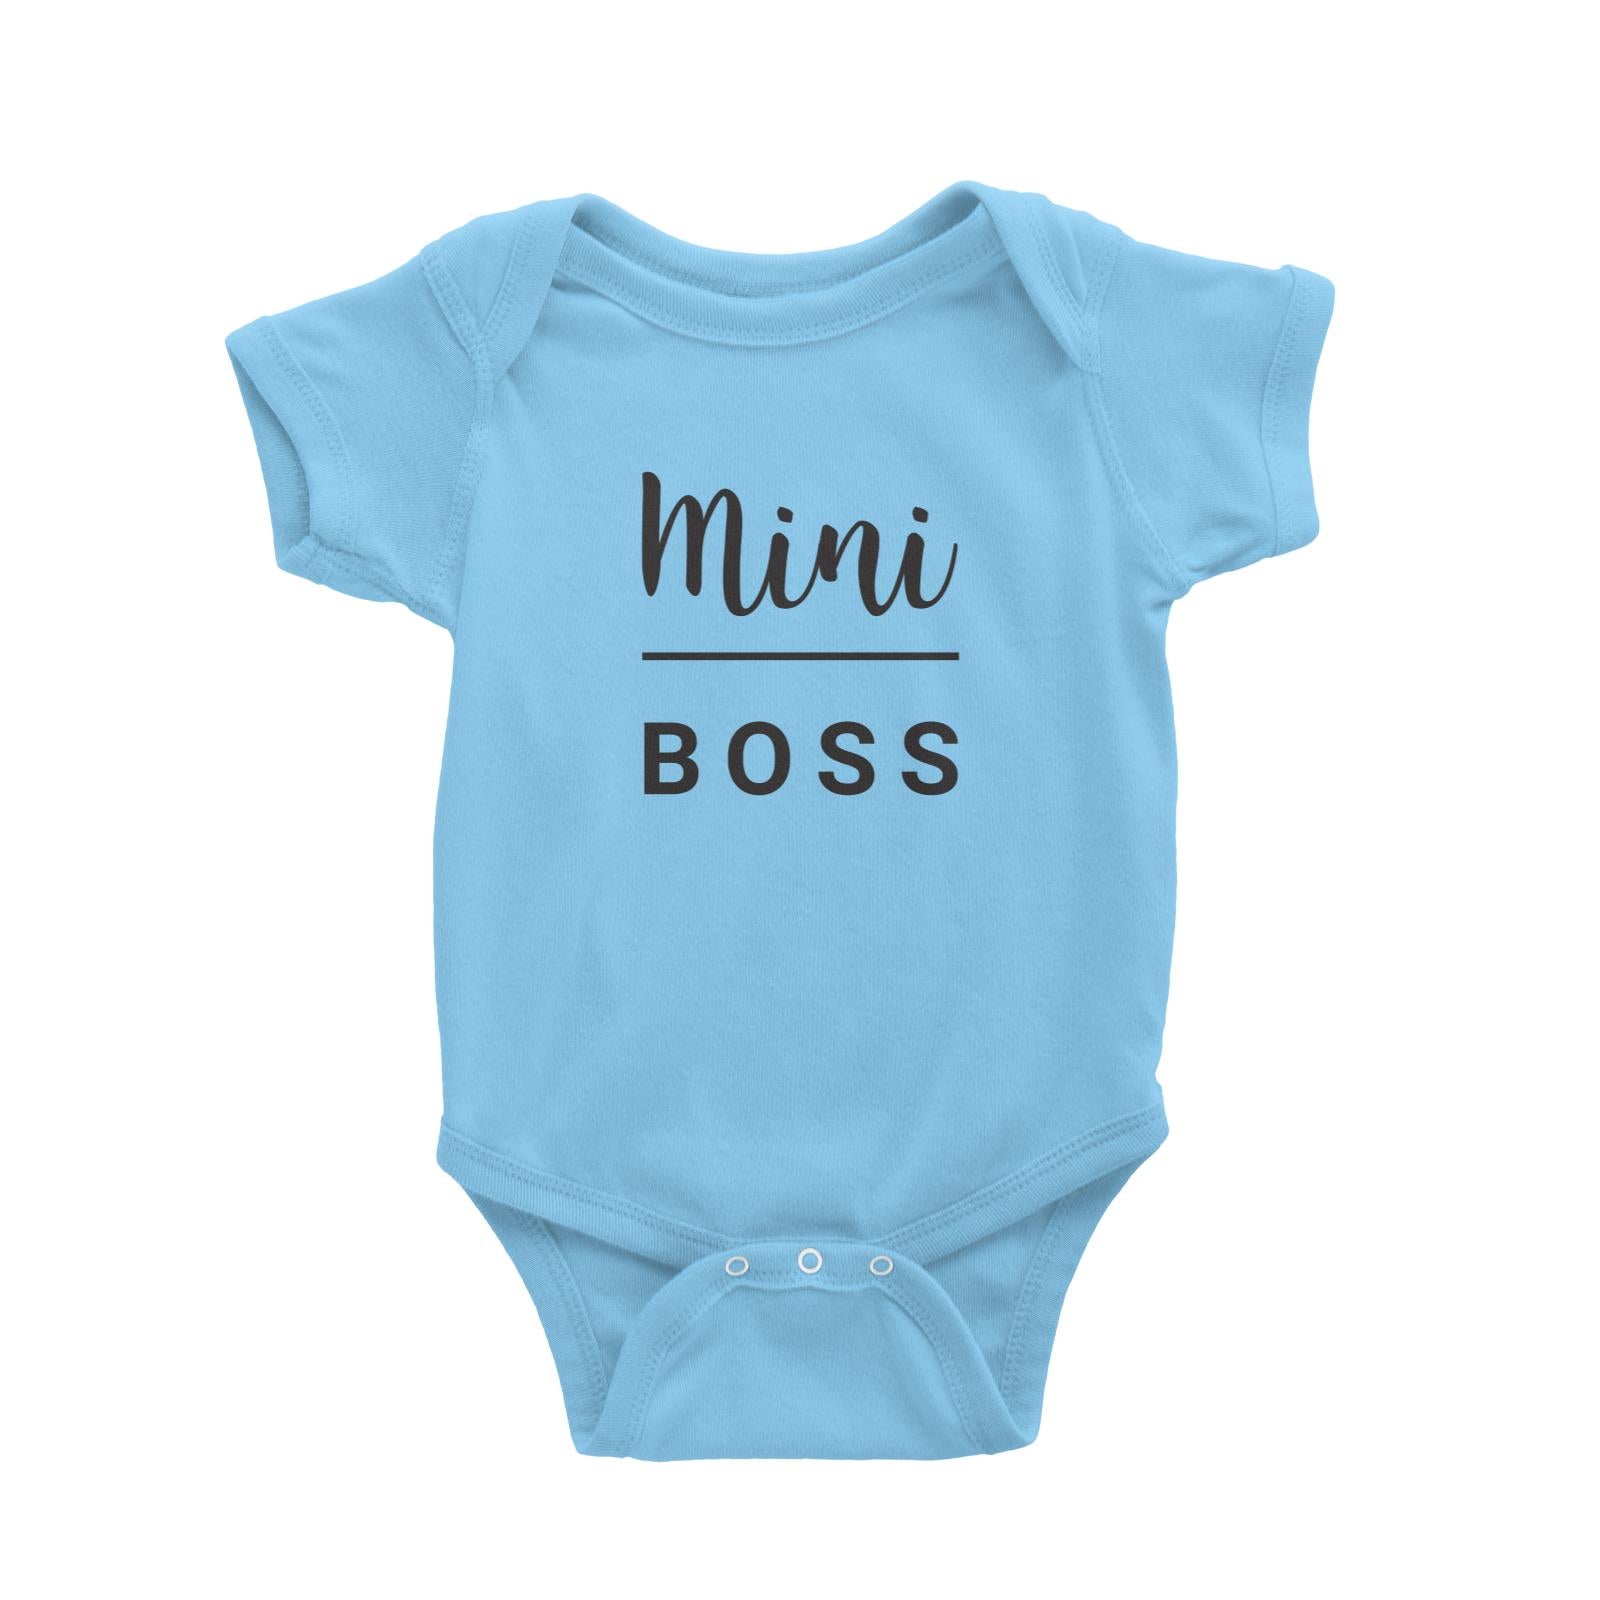 Mini Boss Baby Romper  Matching Family